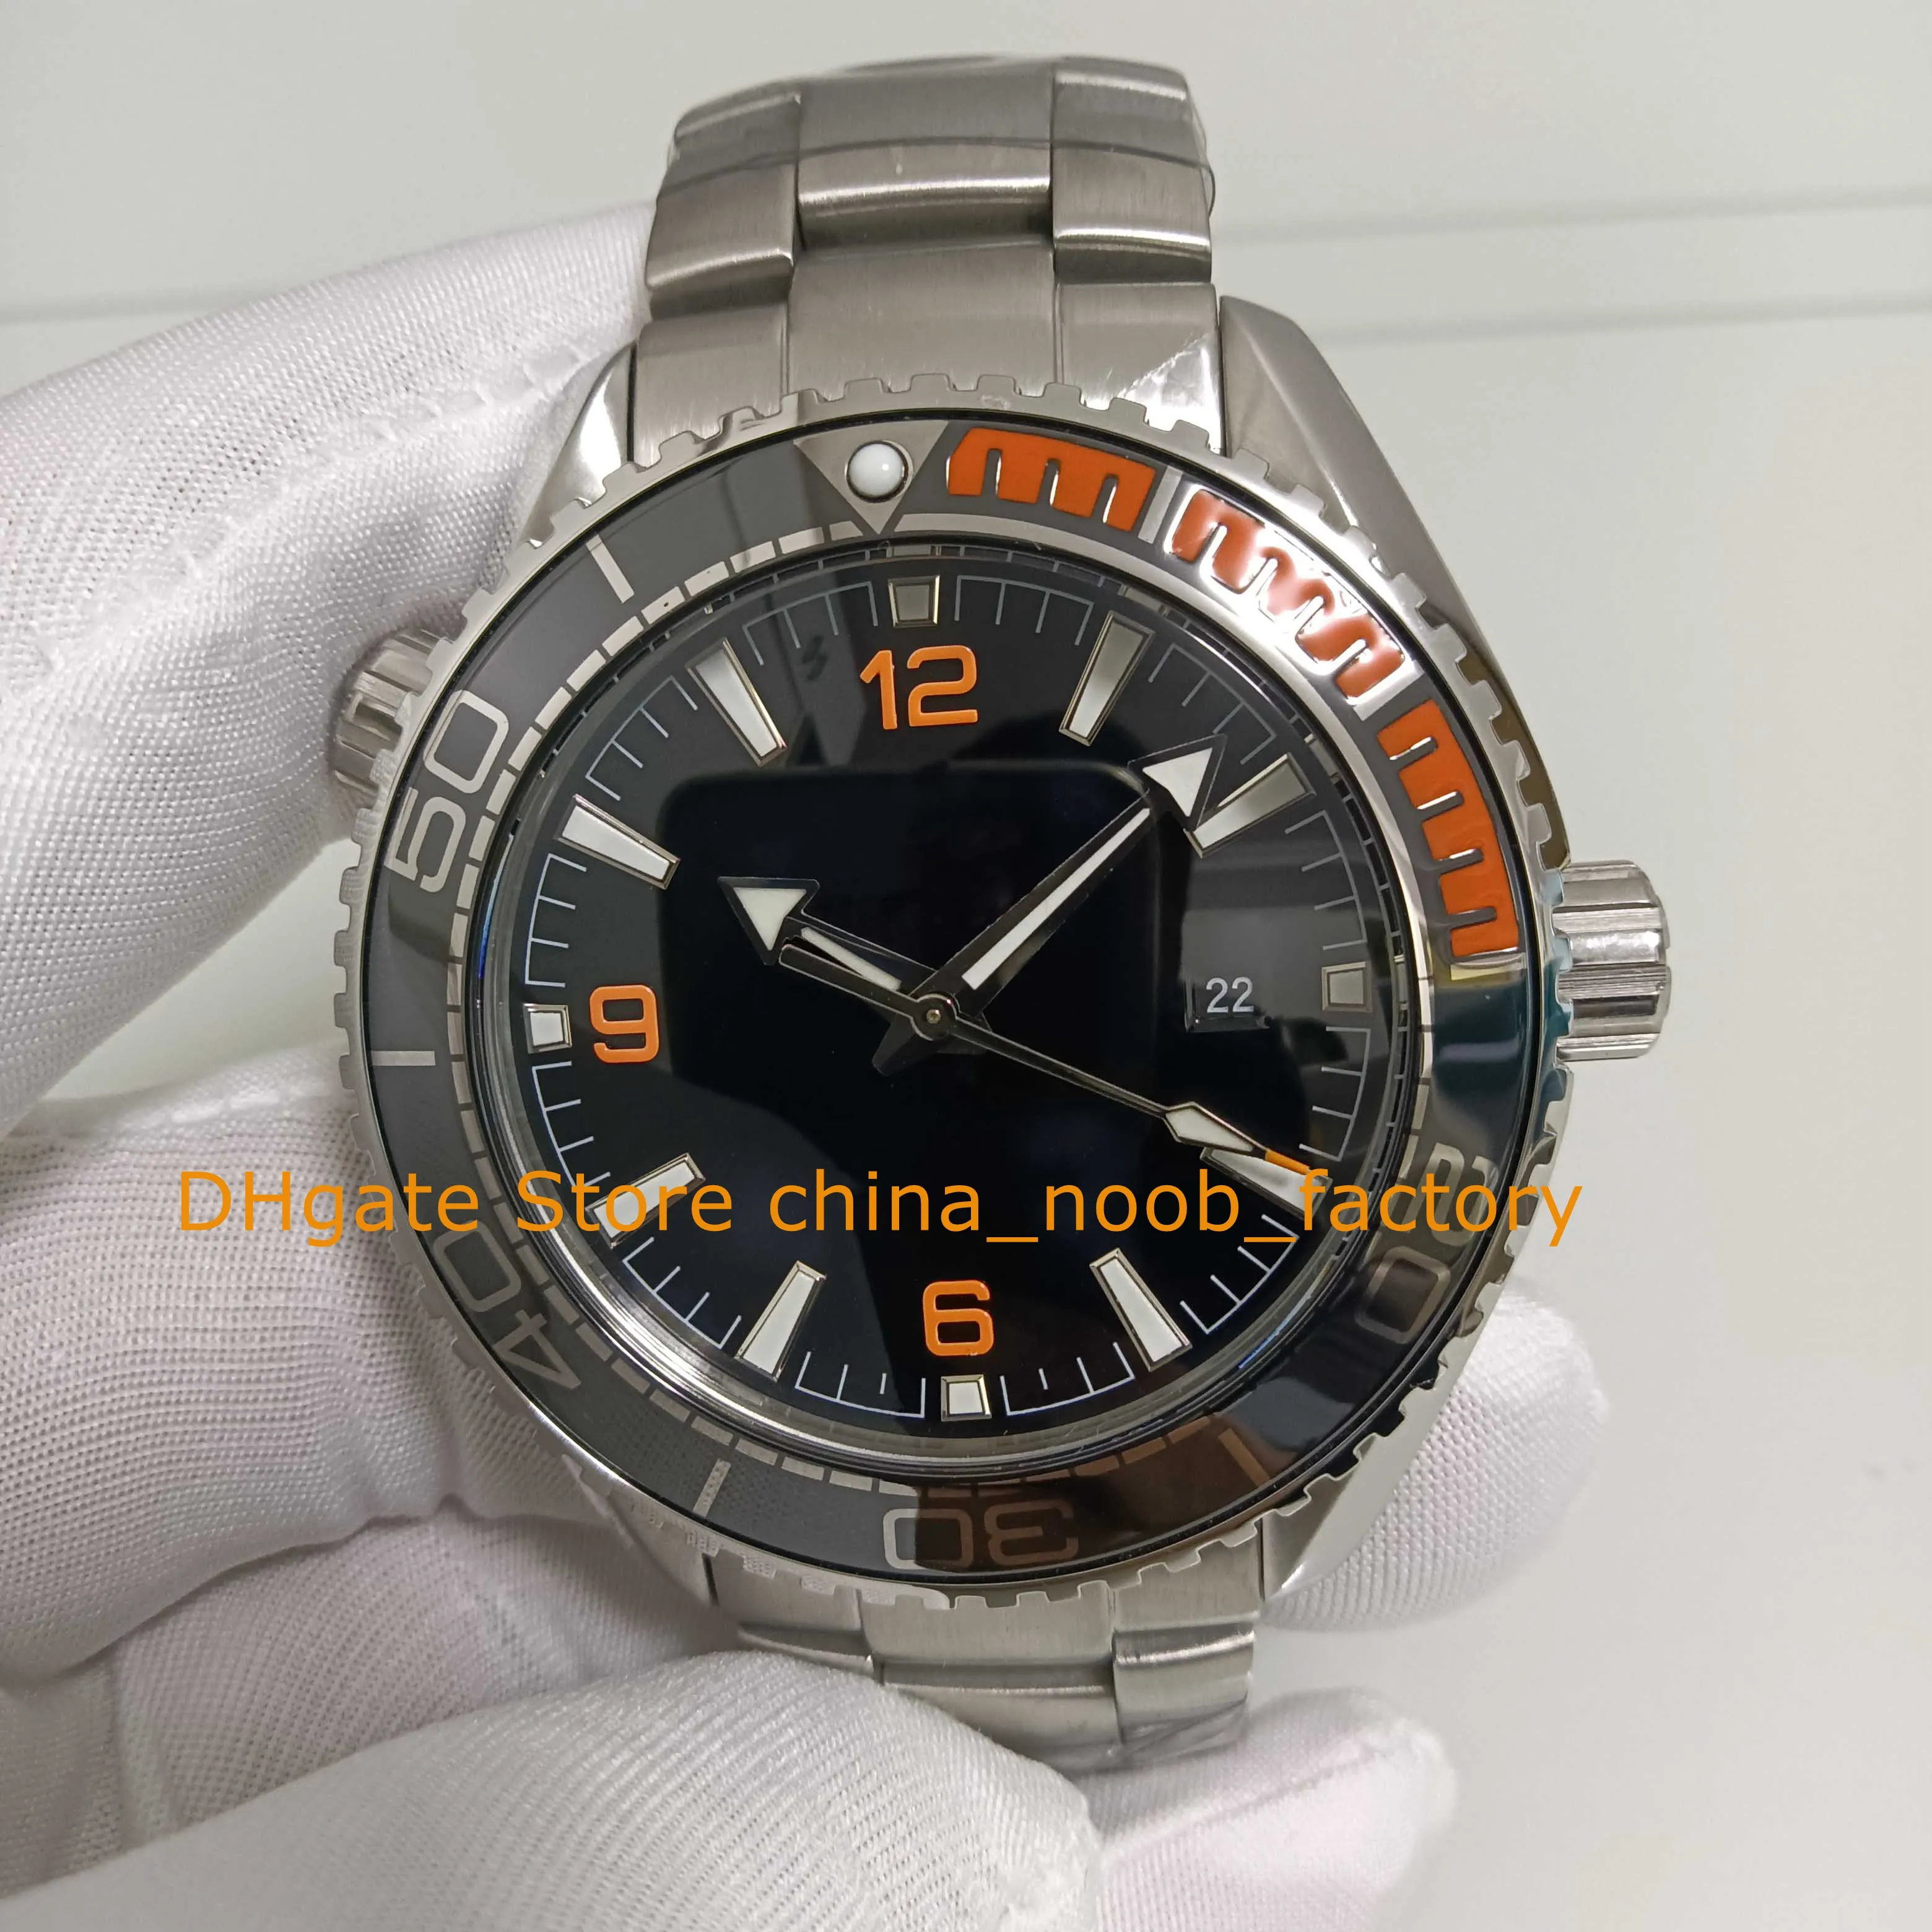 4 kolorowy zegarek automatyczny Męski czarny tarczę obrotowe w kierunku przeciwnym do ruchu wskazówek zegara pomarańczowa ceramiczna stalowa bransoletka